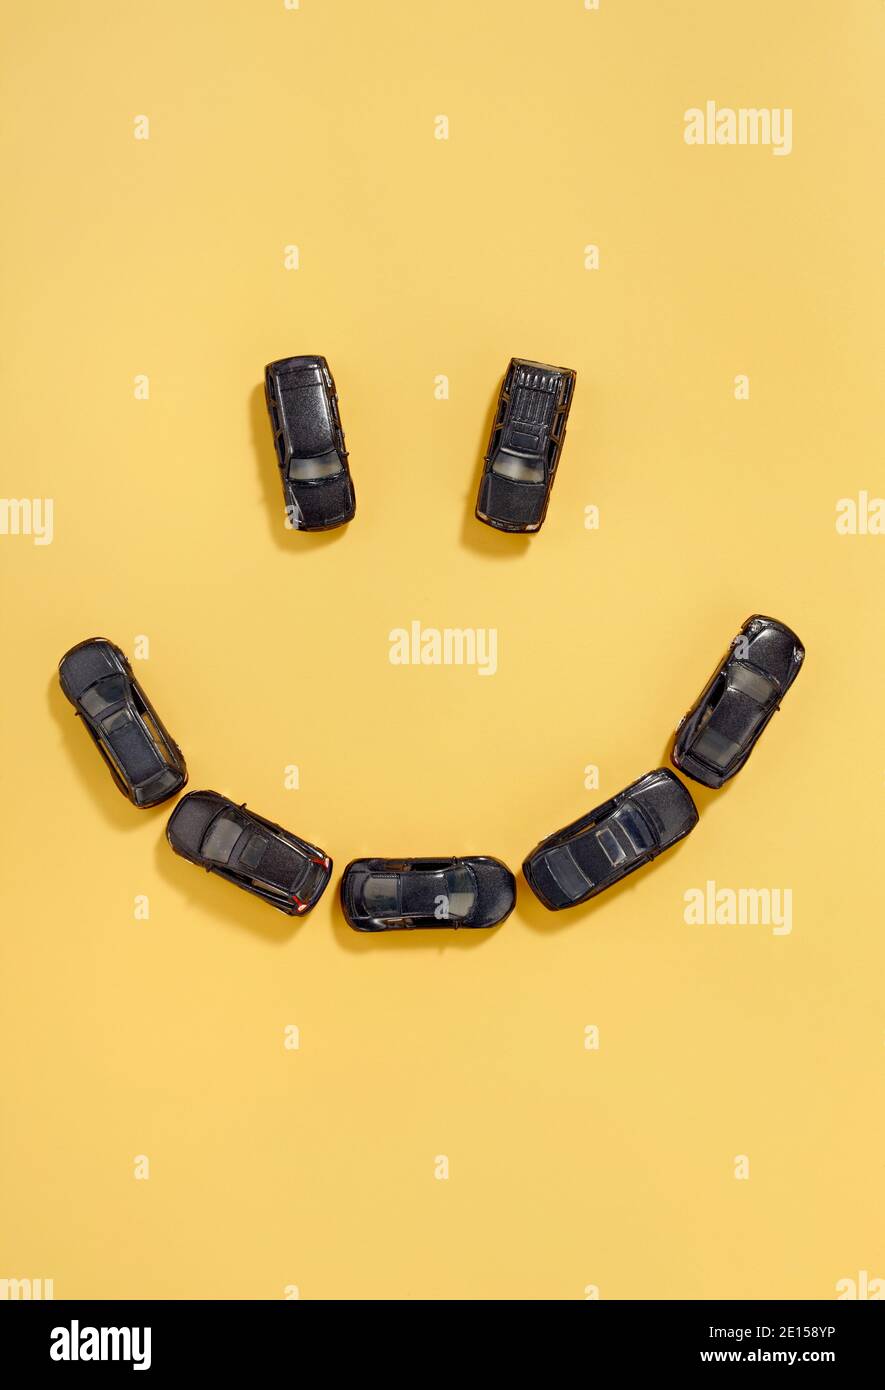 Illustration photo de la mathcbox noire de voiture smiley visage photographiée sur un arrière-plan jaune Banque D'Images